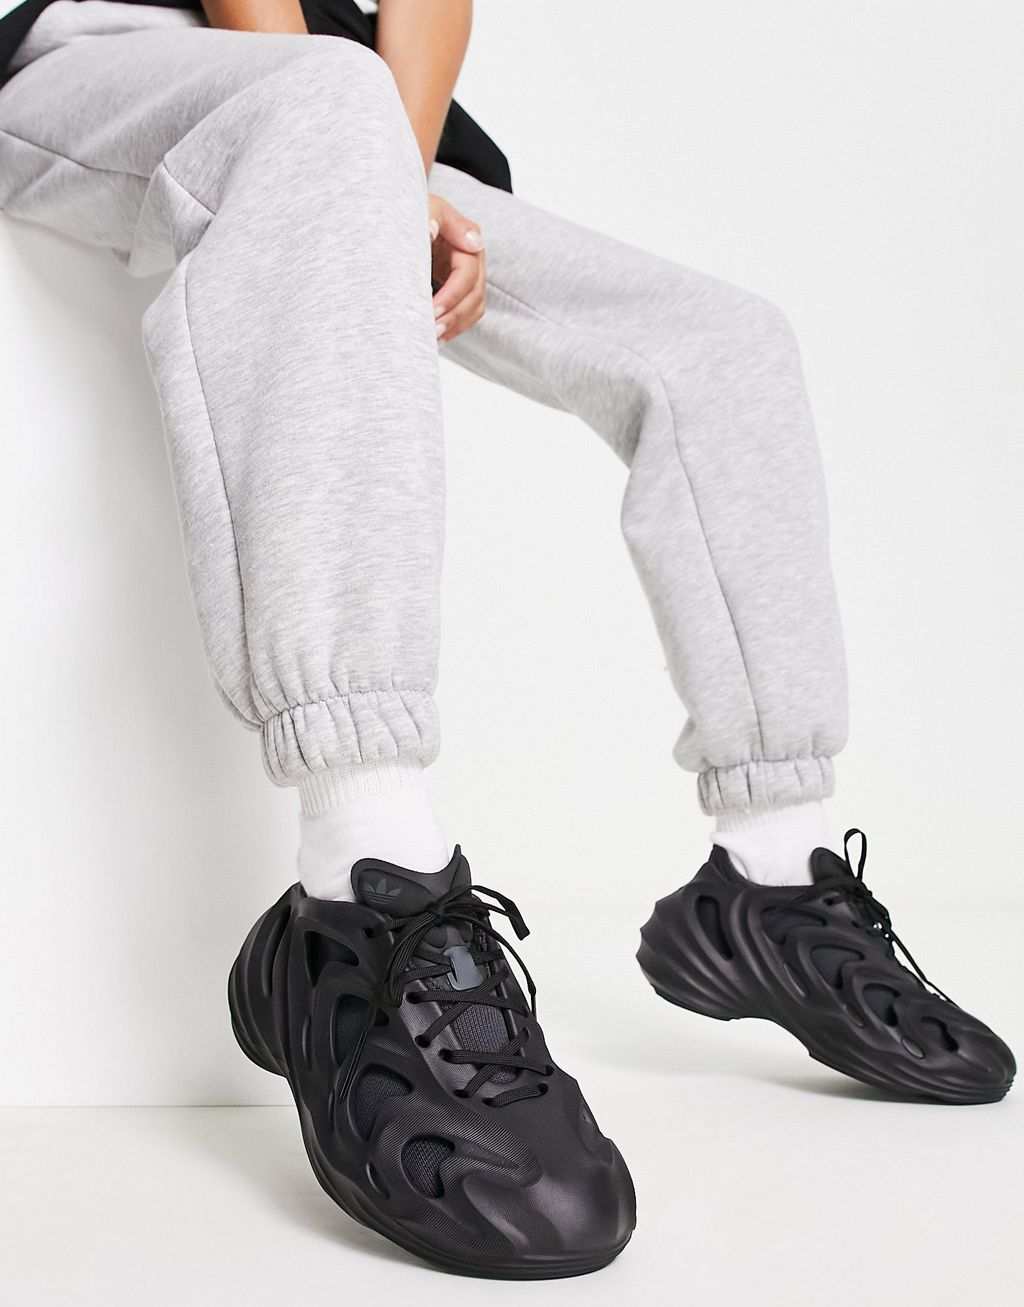 Черные кроссовки adidas Originals Fom Quake цена и фото